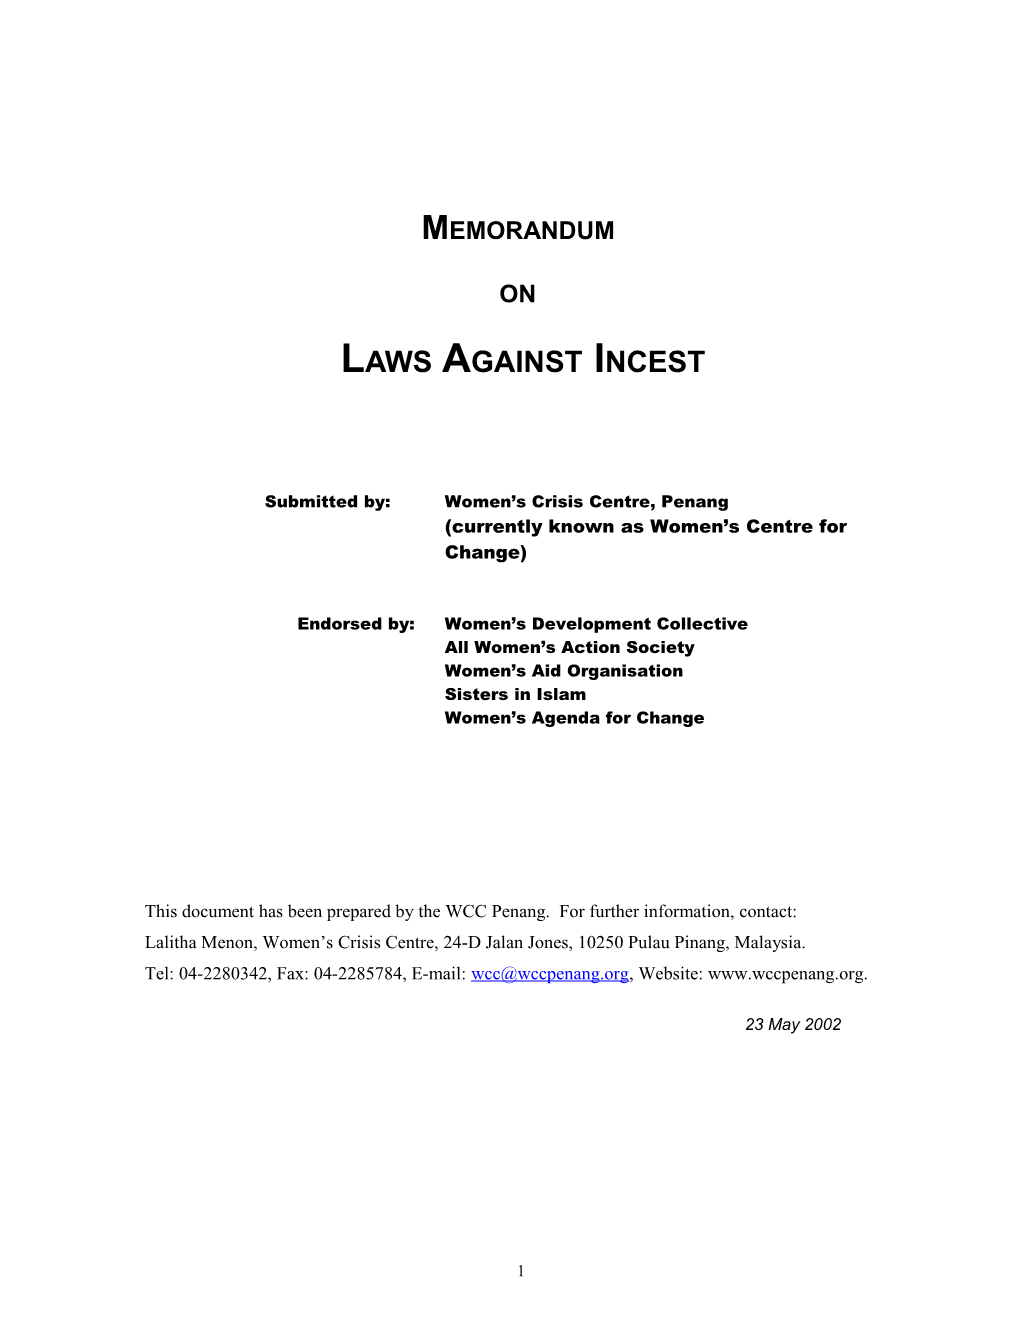 Memorandum on Laws Against Incest